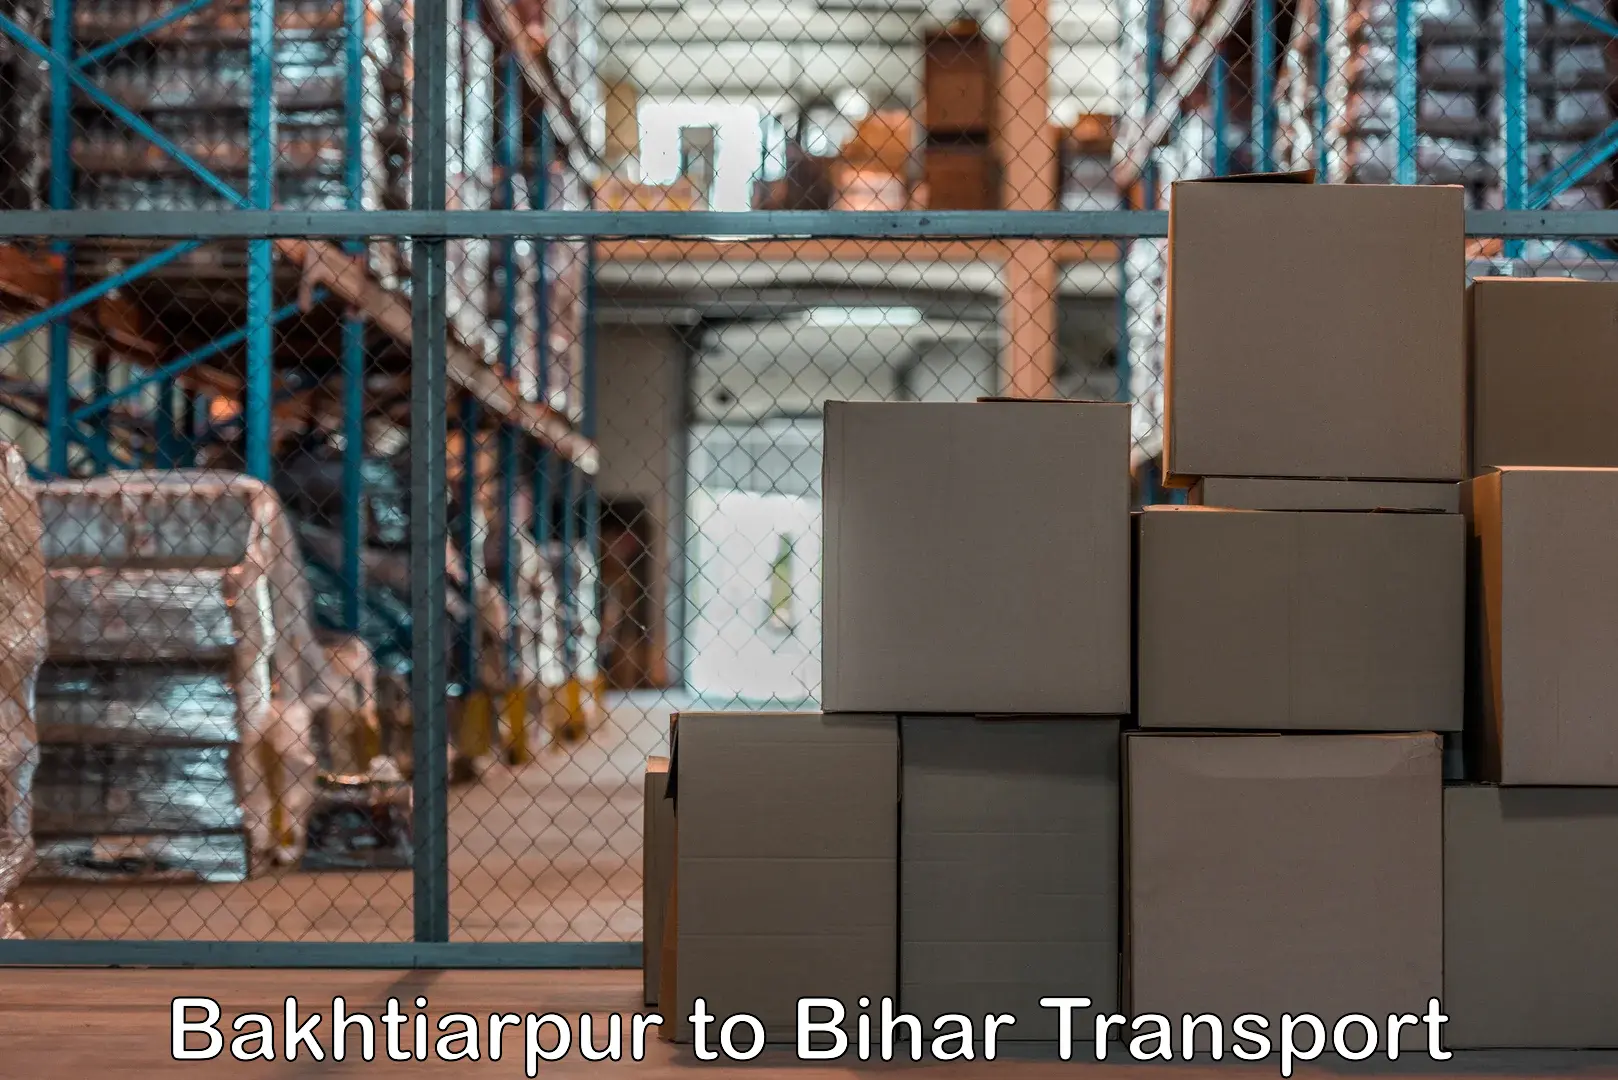 Package delivery services Bakhtiarpur to Muzaffarpur